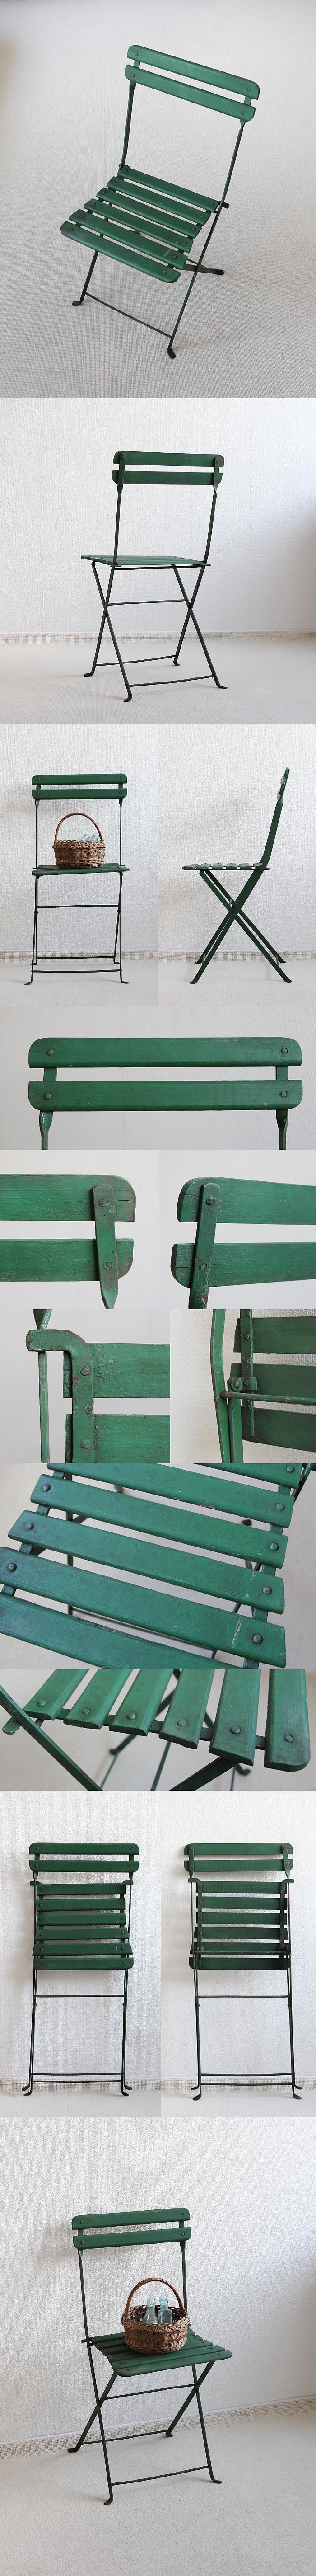 フランス アンティーク フォールディングチェア 木製椅子 折りたたみ式 ペイント家具「ガーデンチェア」P-380